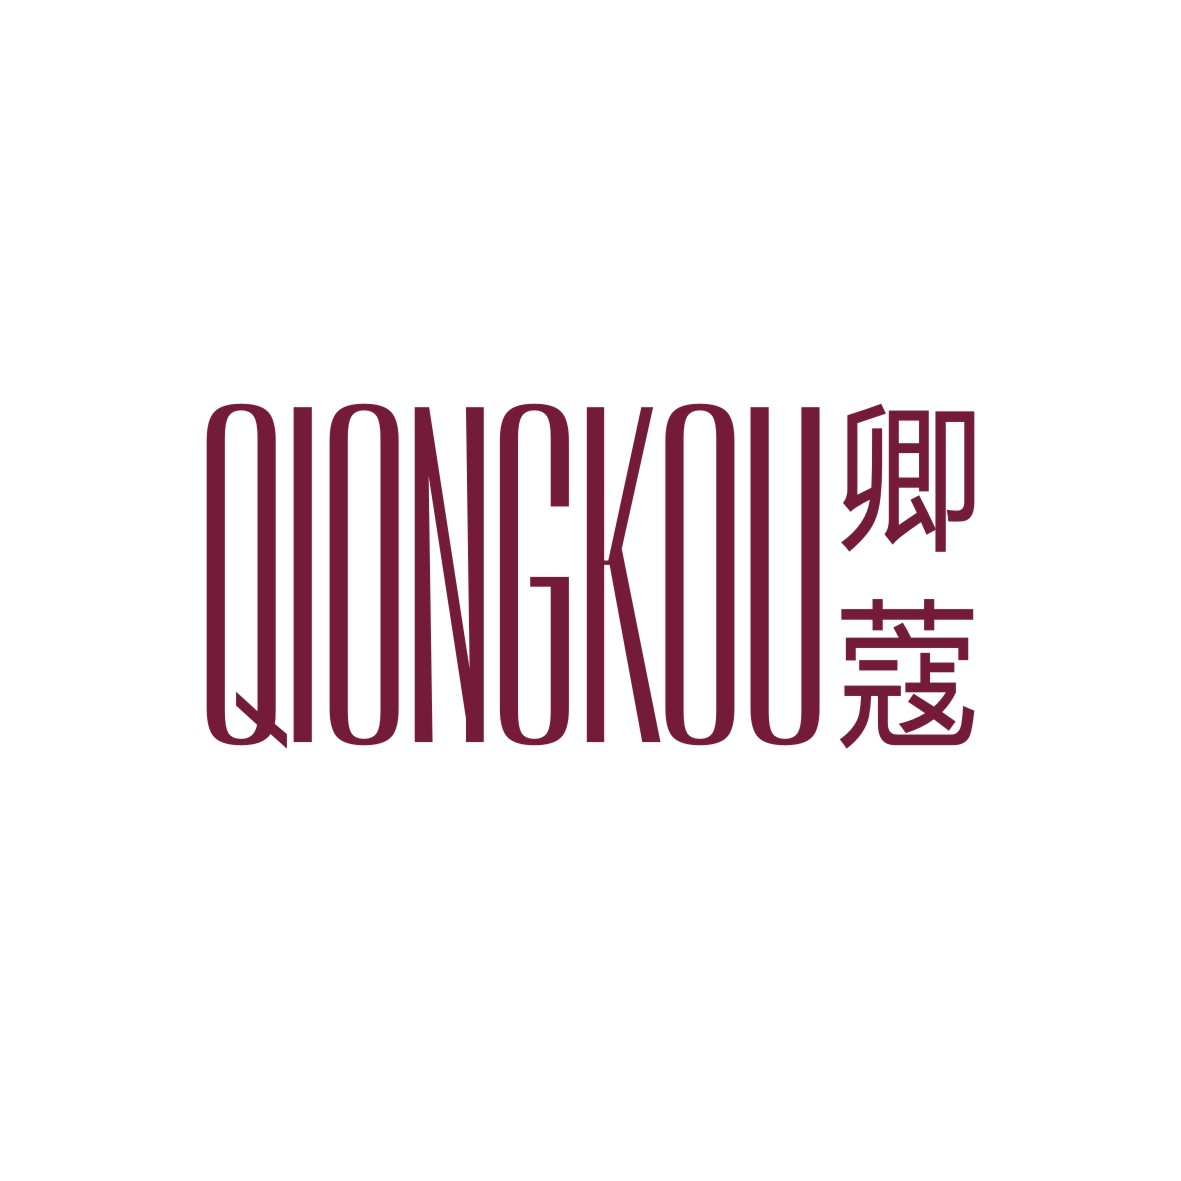 广州品翰文化发展有限公司商标卿蔻 QIONGKOU（14类）多少钱？